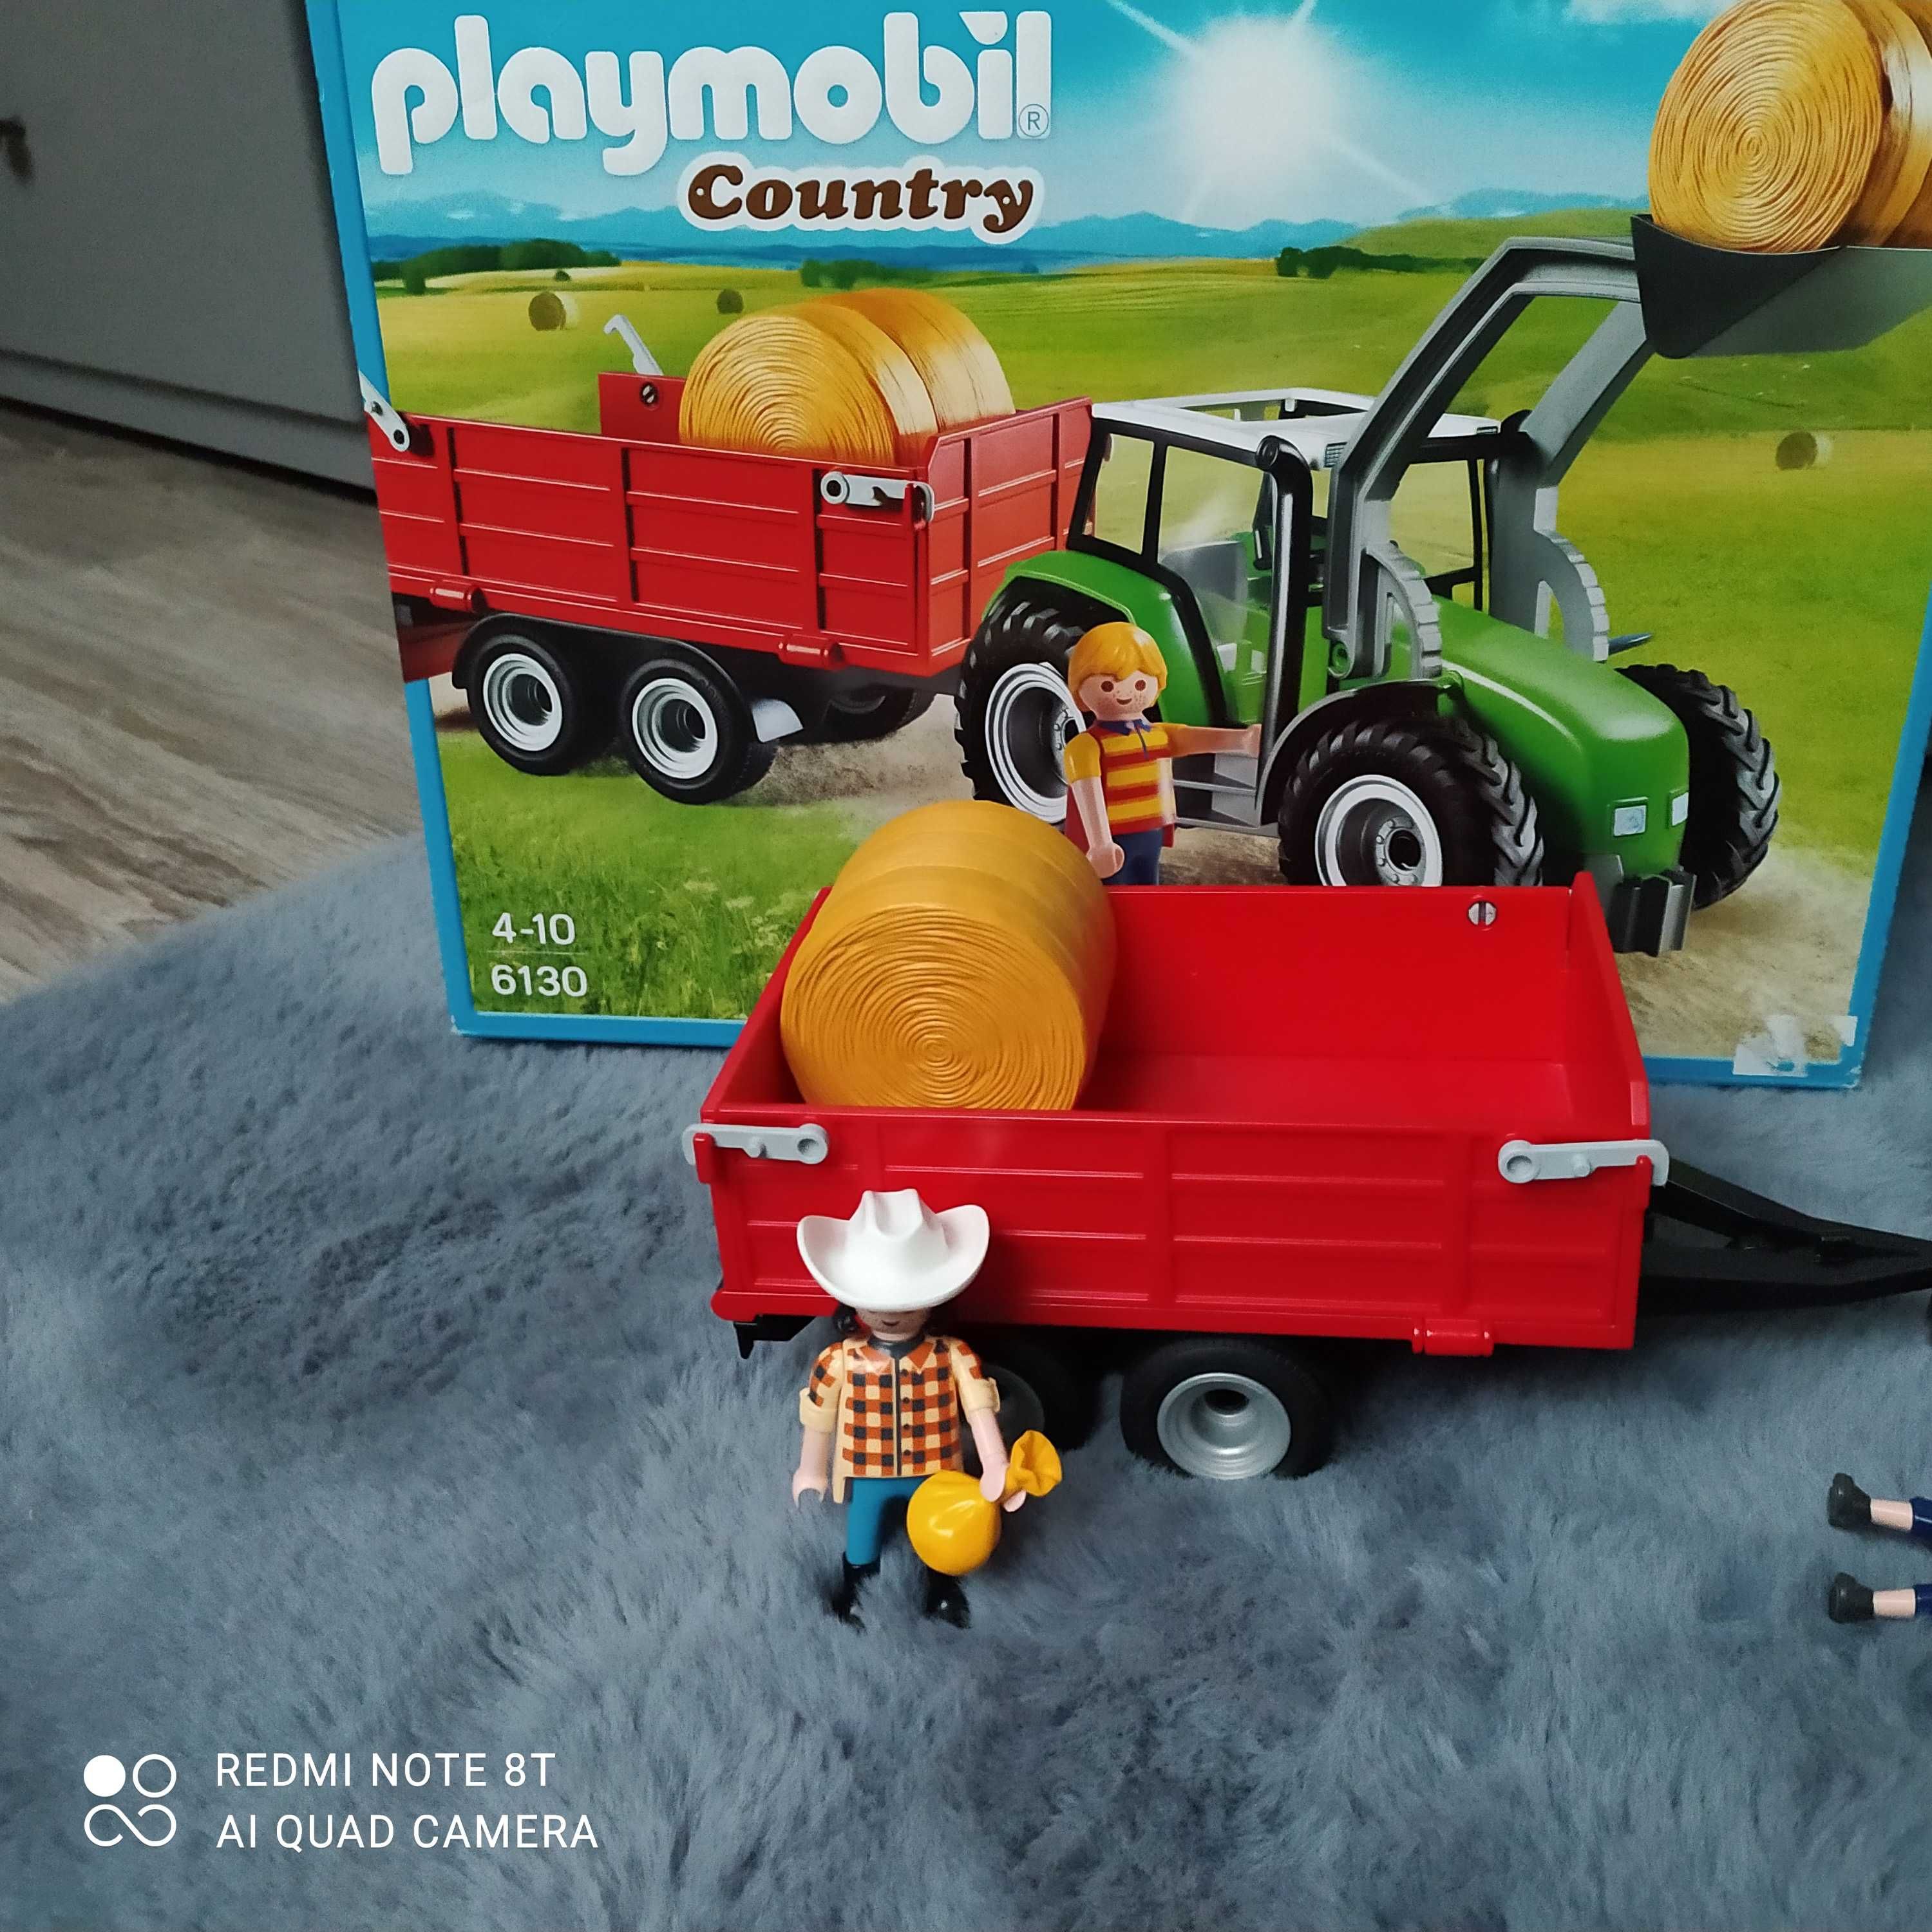 J. Nowy Playmobil 6130 Country Duży traktor przyczepą + gratis Koszalin • OLX.pl